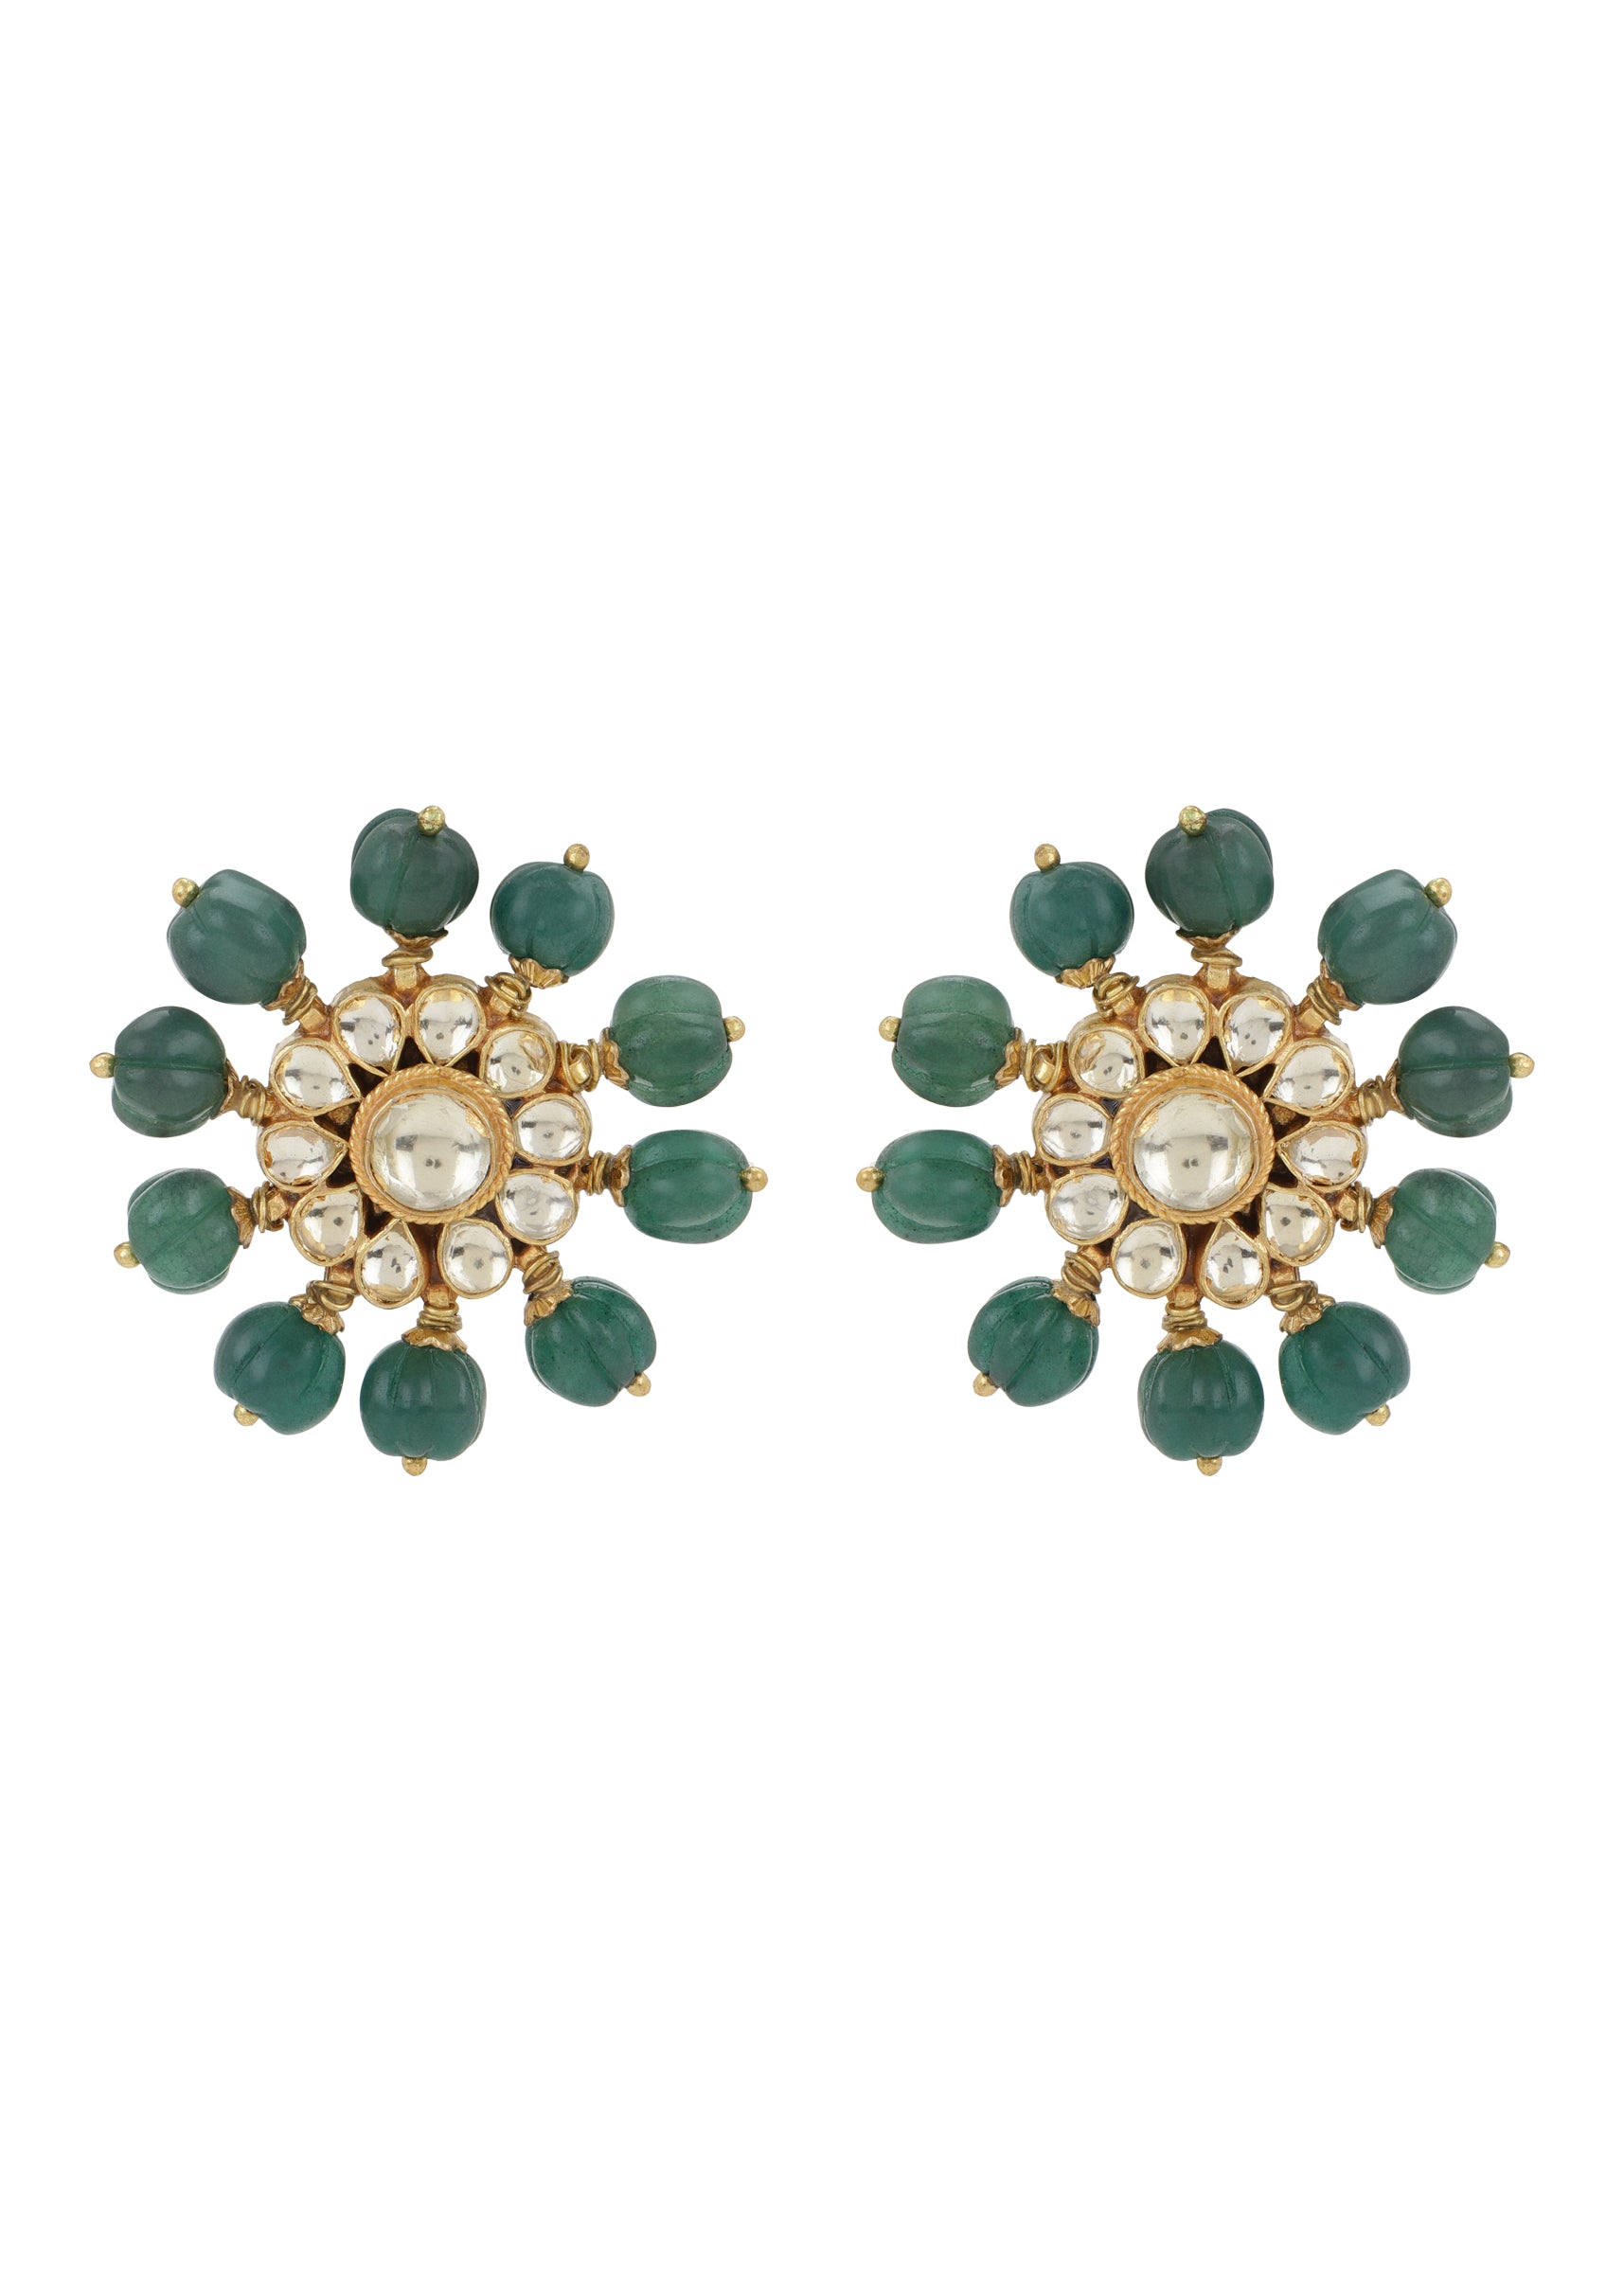 Green Earrings/ Emerald Green Rhinestone Clip on Earrings/ Large Stud Green  Earrings, Prom/ Pageant/ Formal Events Earrings - Etsy Sweden